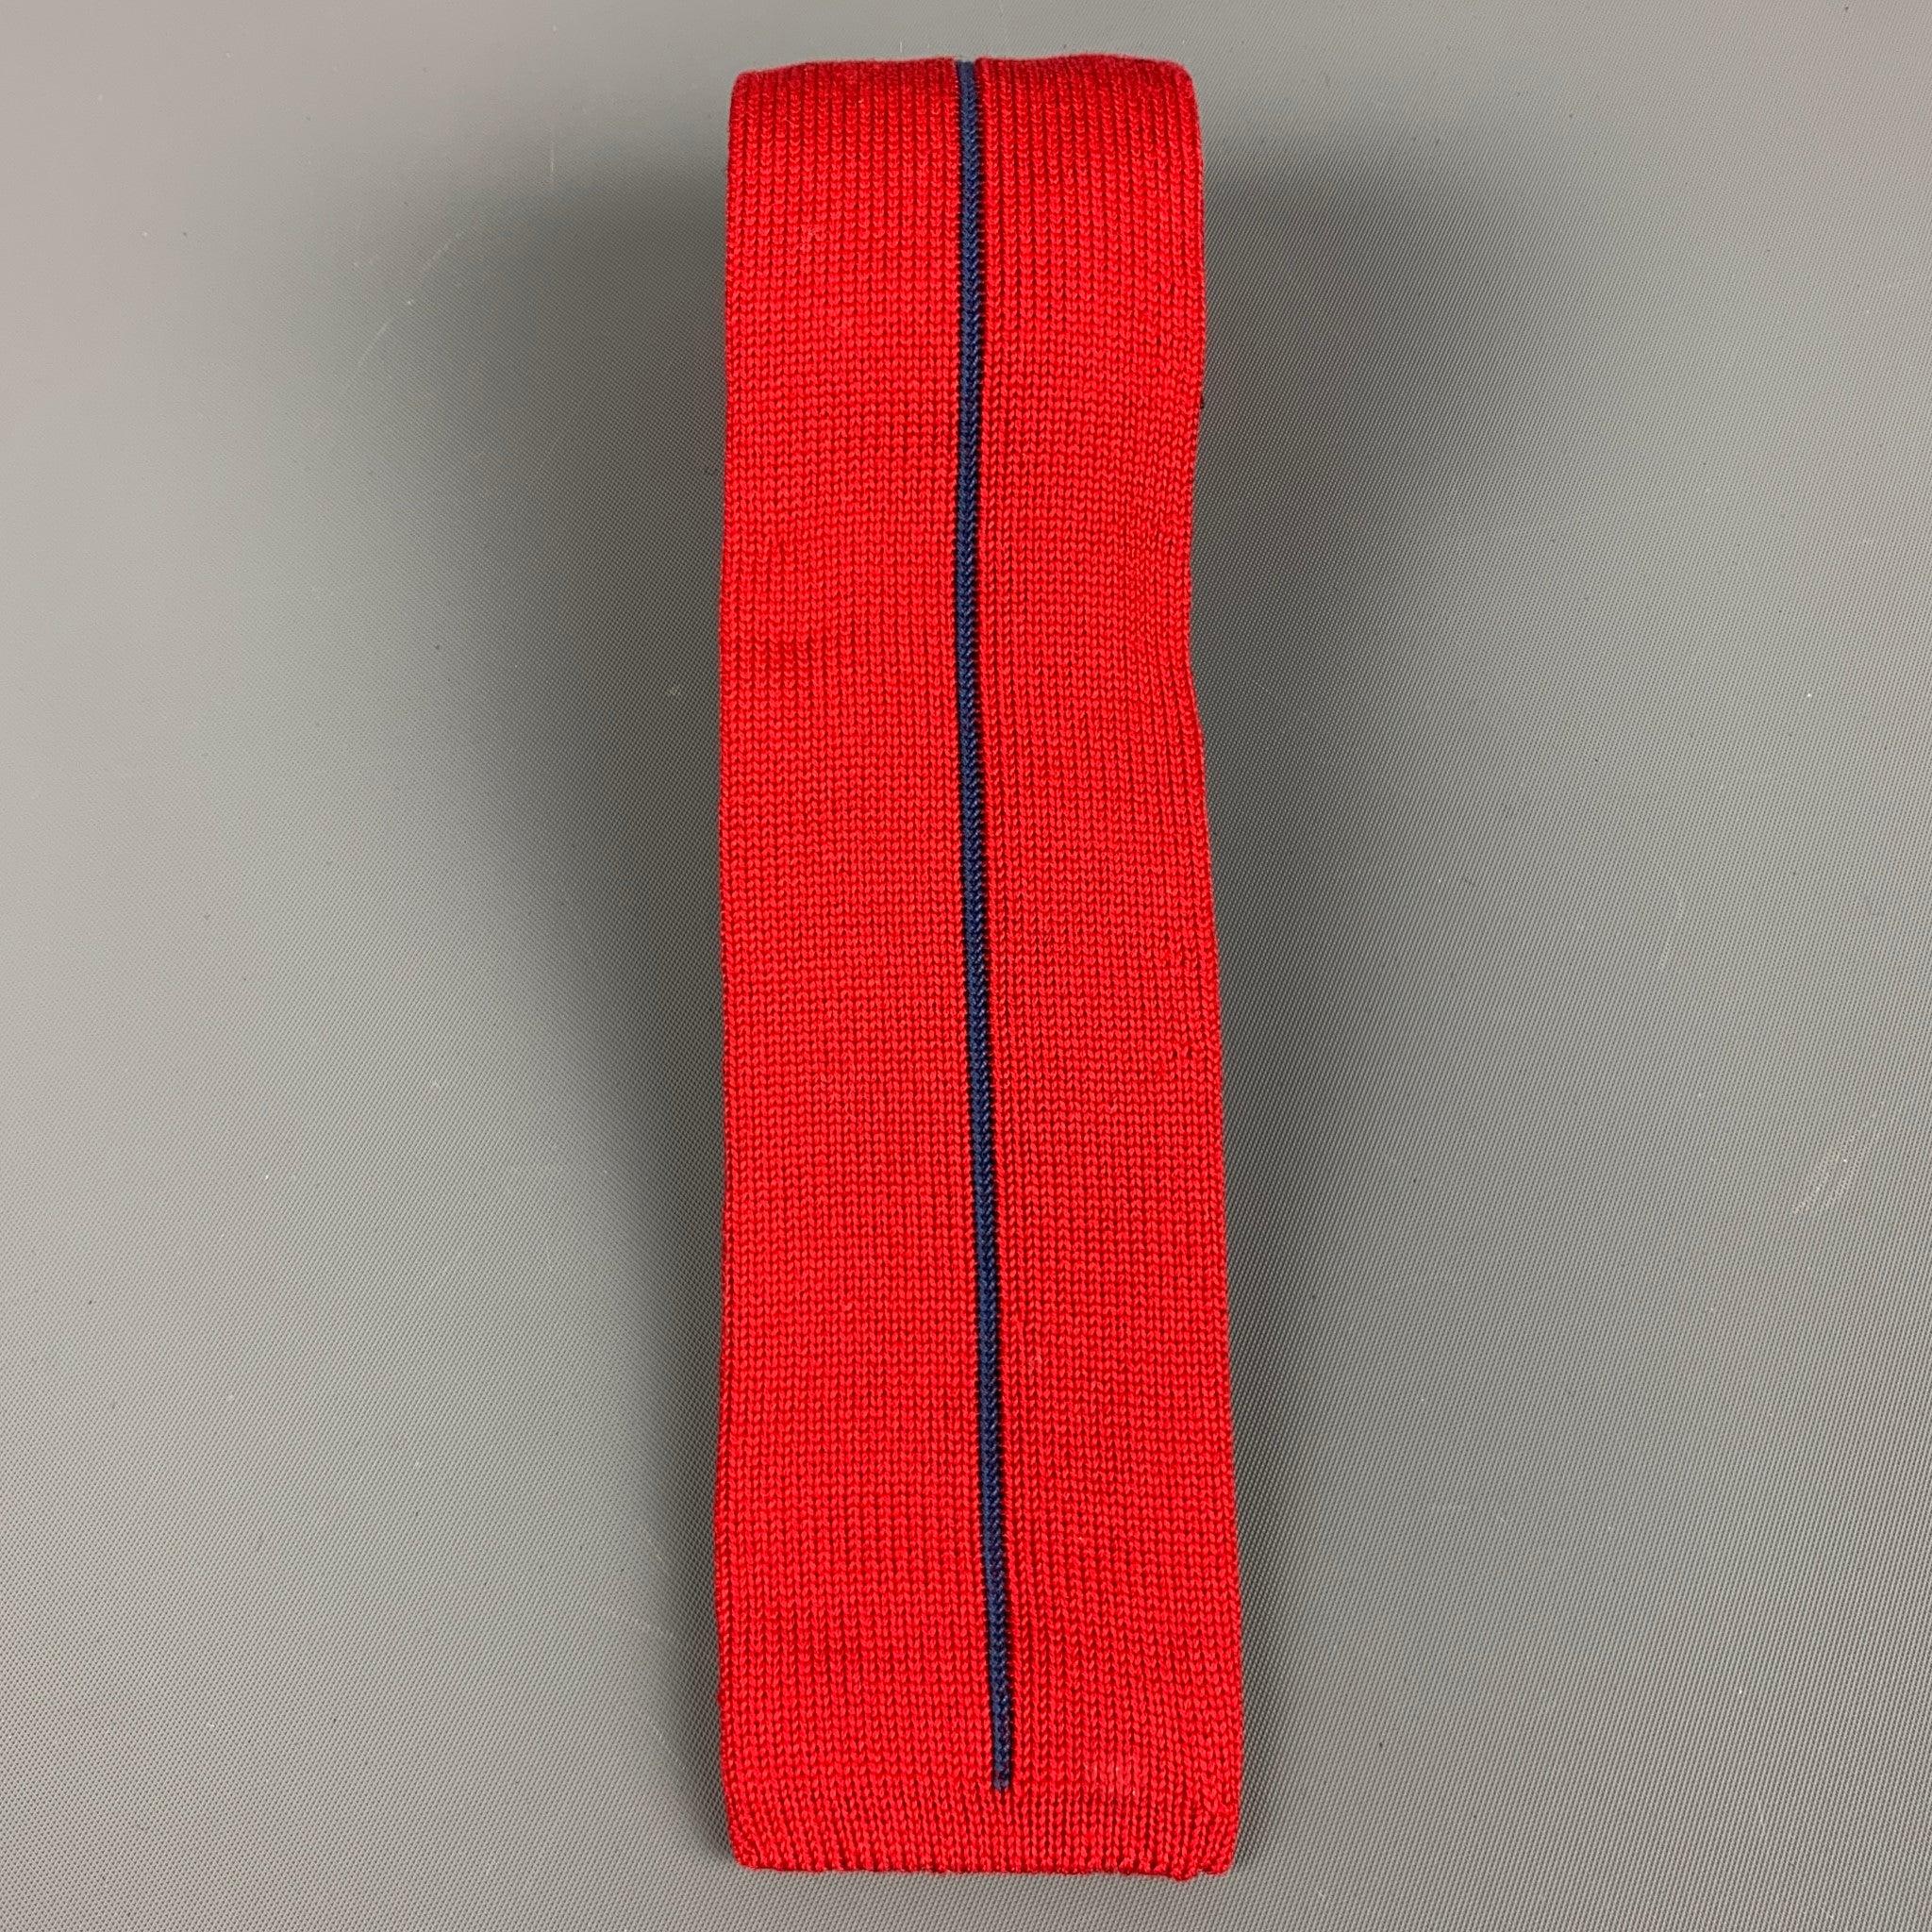 CLAUDE MONTANA
Cravate en maille de coton rouge à rayures verticales bleues. Fabriqué en Italie. Excellent état. 

Mesures : 
  Largeur : 2 pouces Longueur : 49 pouces 
  
  
 
Référence : 127989
Catégorie : Cravate
Plus de détails
    
Marque : 